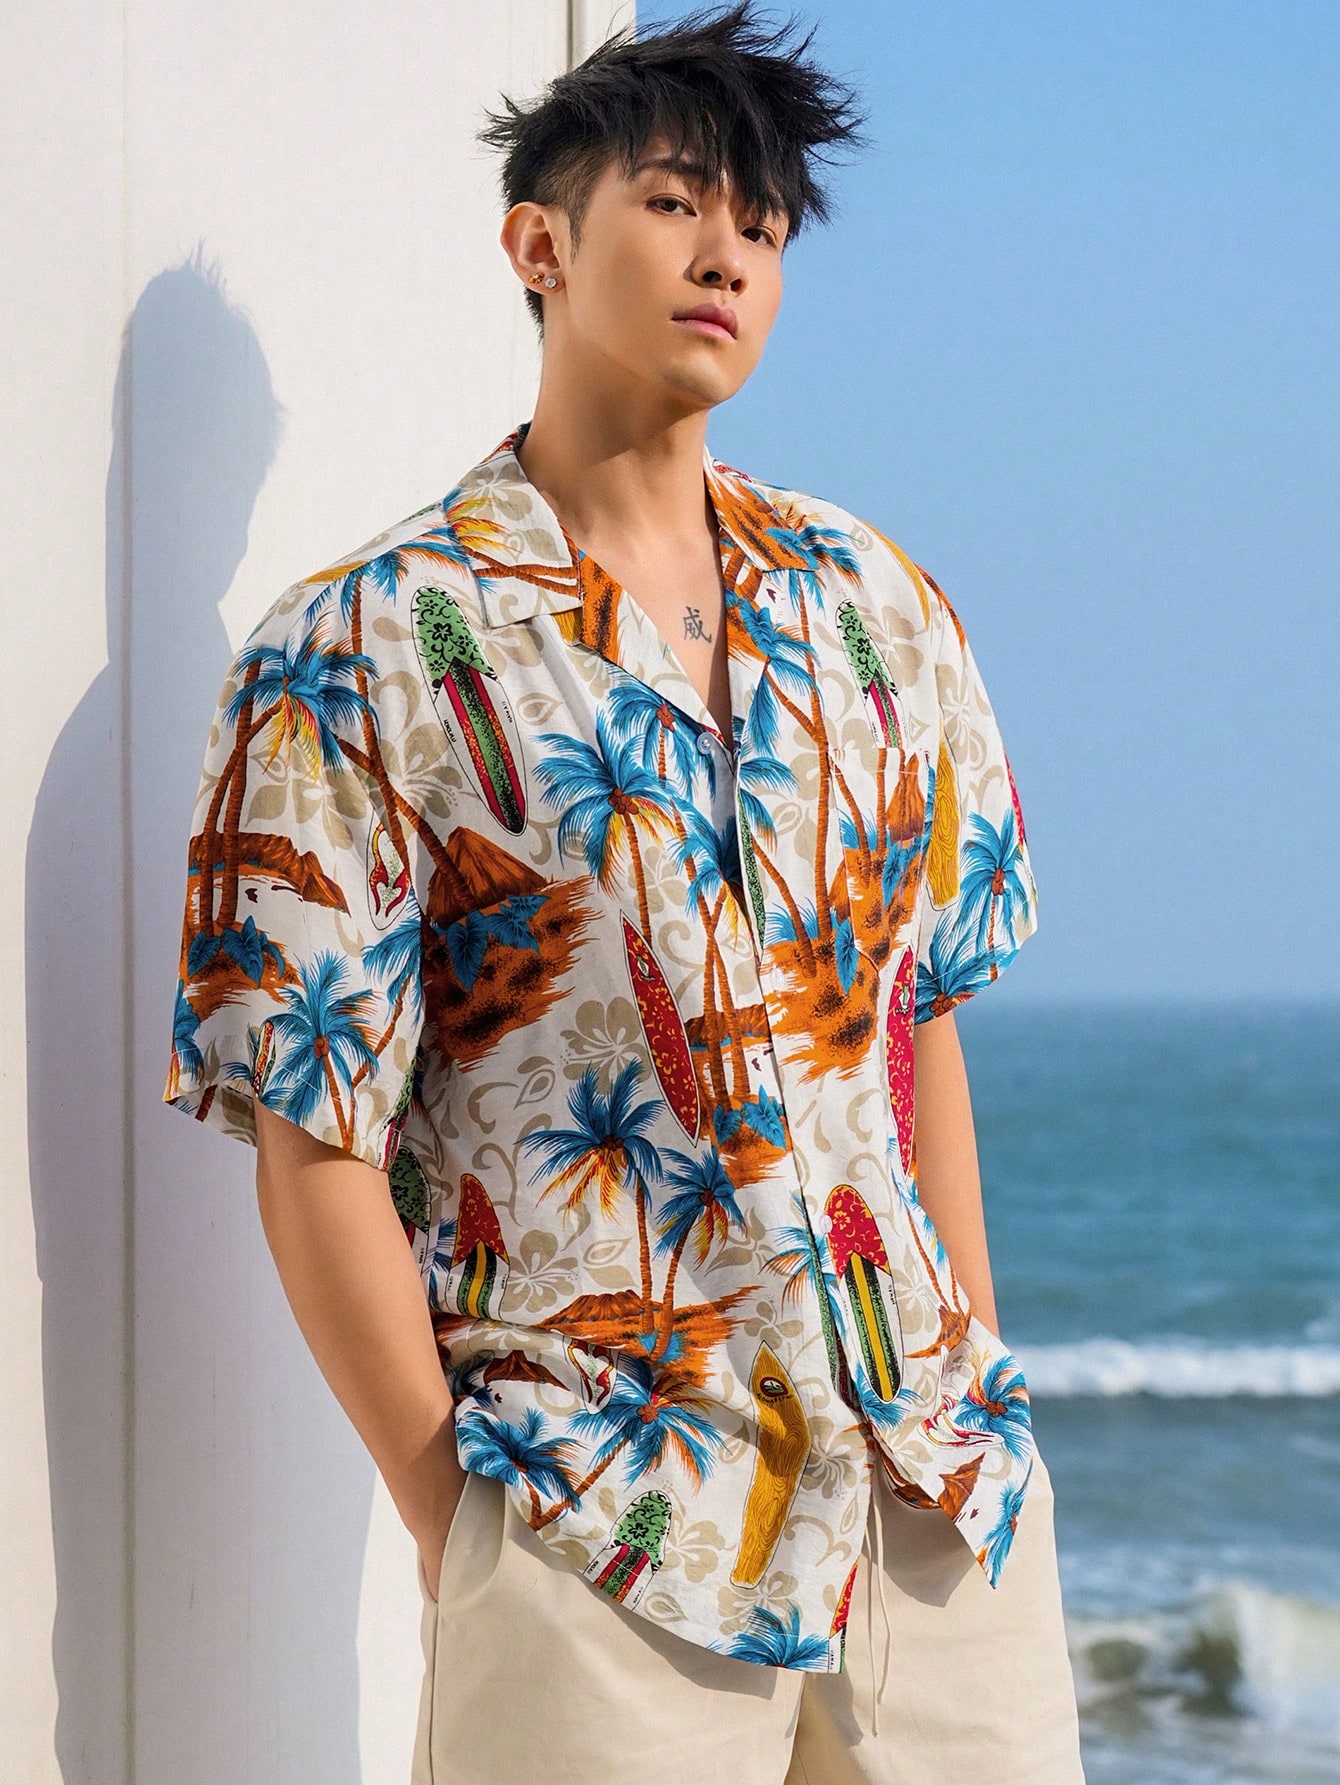 DAZY Мужская летняя пляжная гавайская рубашка с принтом пальм, многоцветный махровая пляжная рубашка h